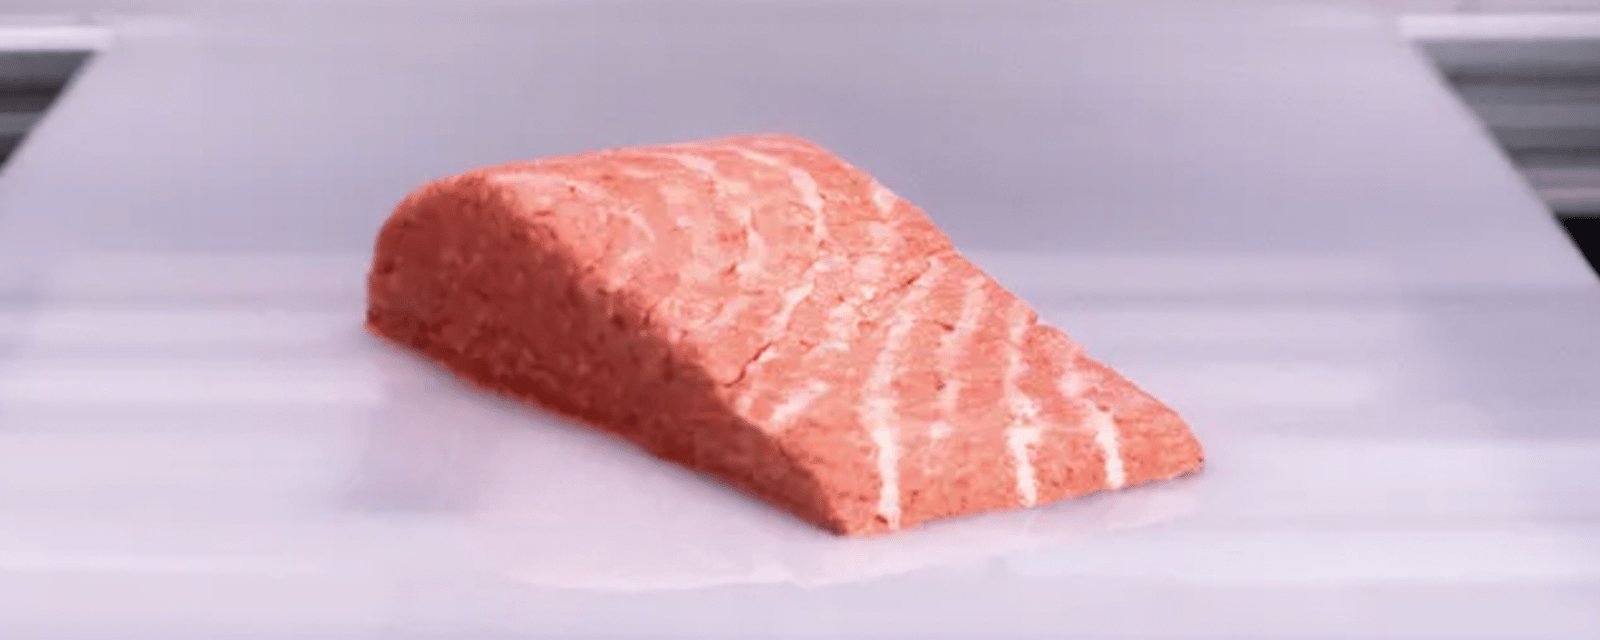 Un saumon végétalien fabriqué avec une imprimante 3D désormais disponible dans des supermarchés